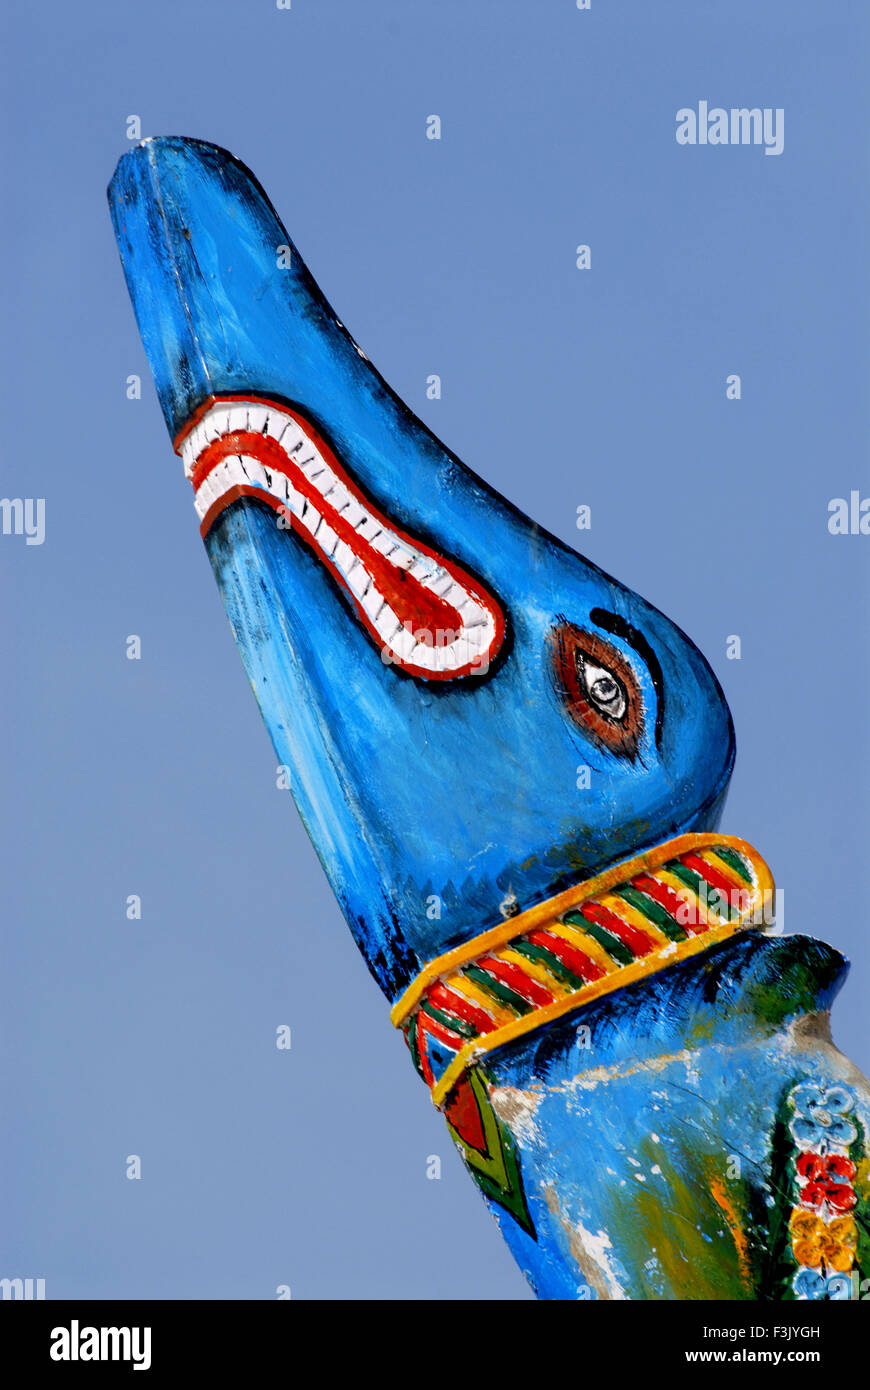 Dipinto di testa di animale mitologico sul lato anteriore del paese la pesca in barca blue sky spiaggia Kunkeshwar Sindhudurg maharashtra india Foto Stock